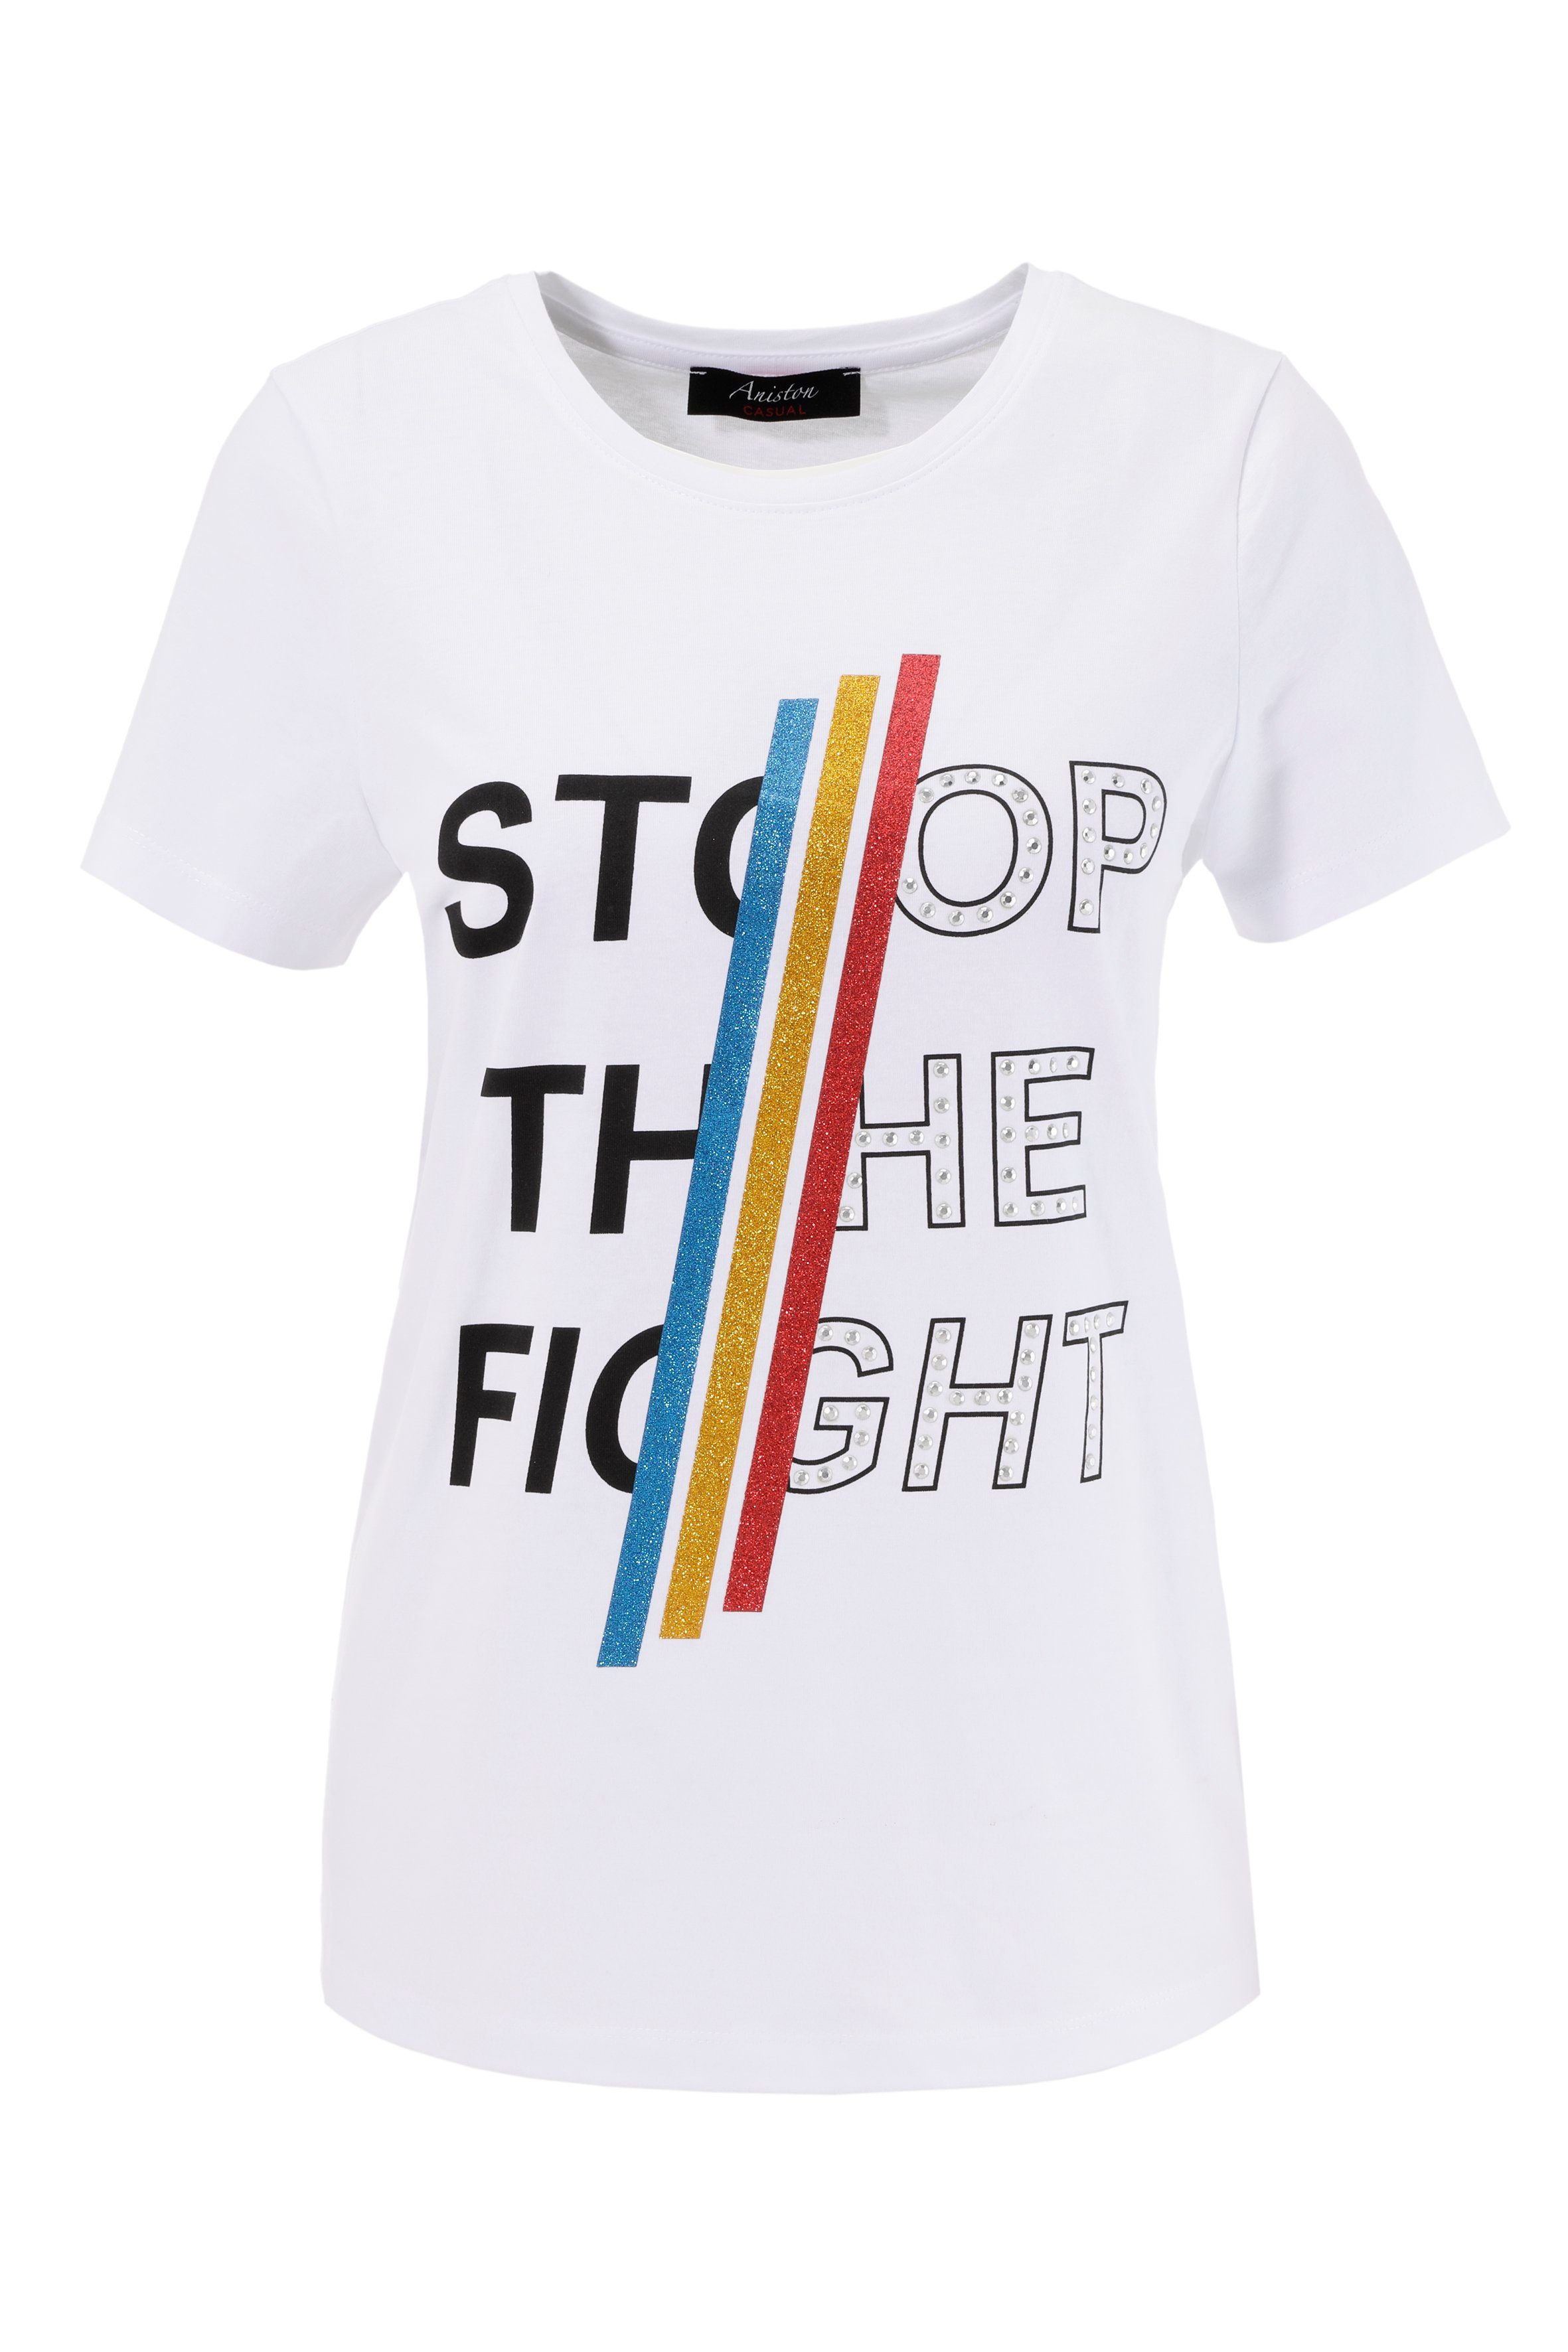 Print-Shirt mit Schriftzug bunten Glitzerstreifen, Nieten Aniston und CASUAL